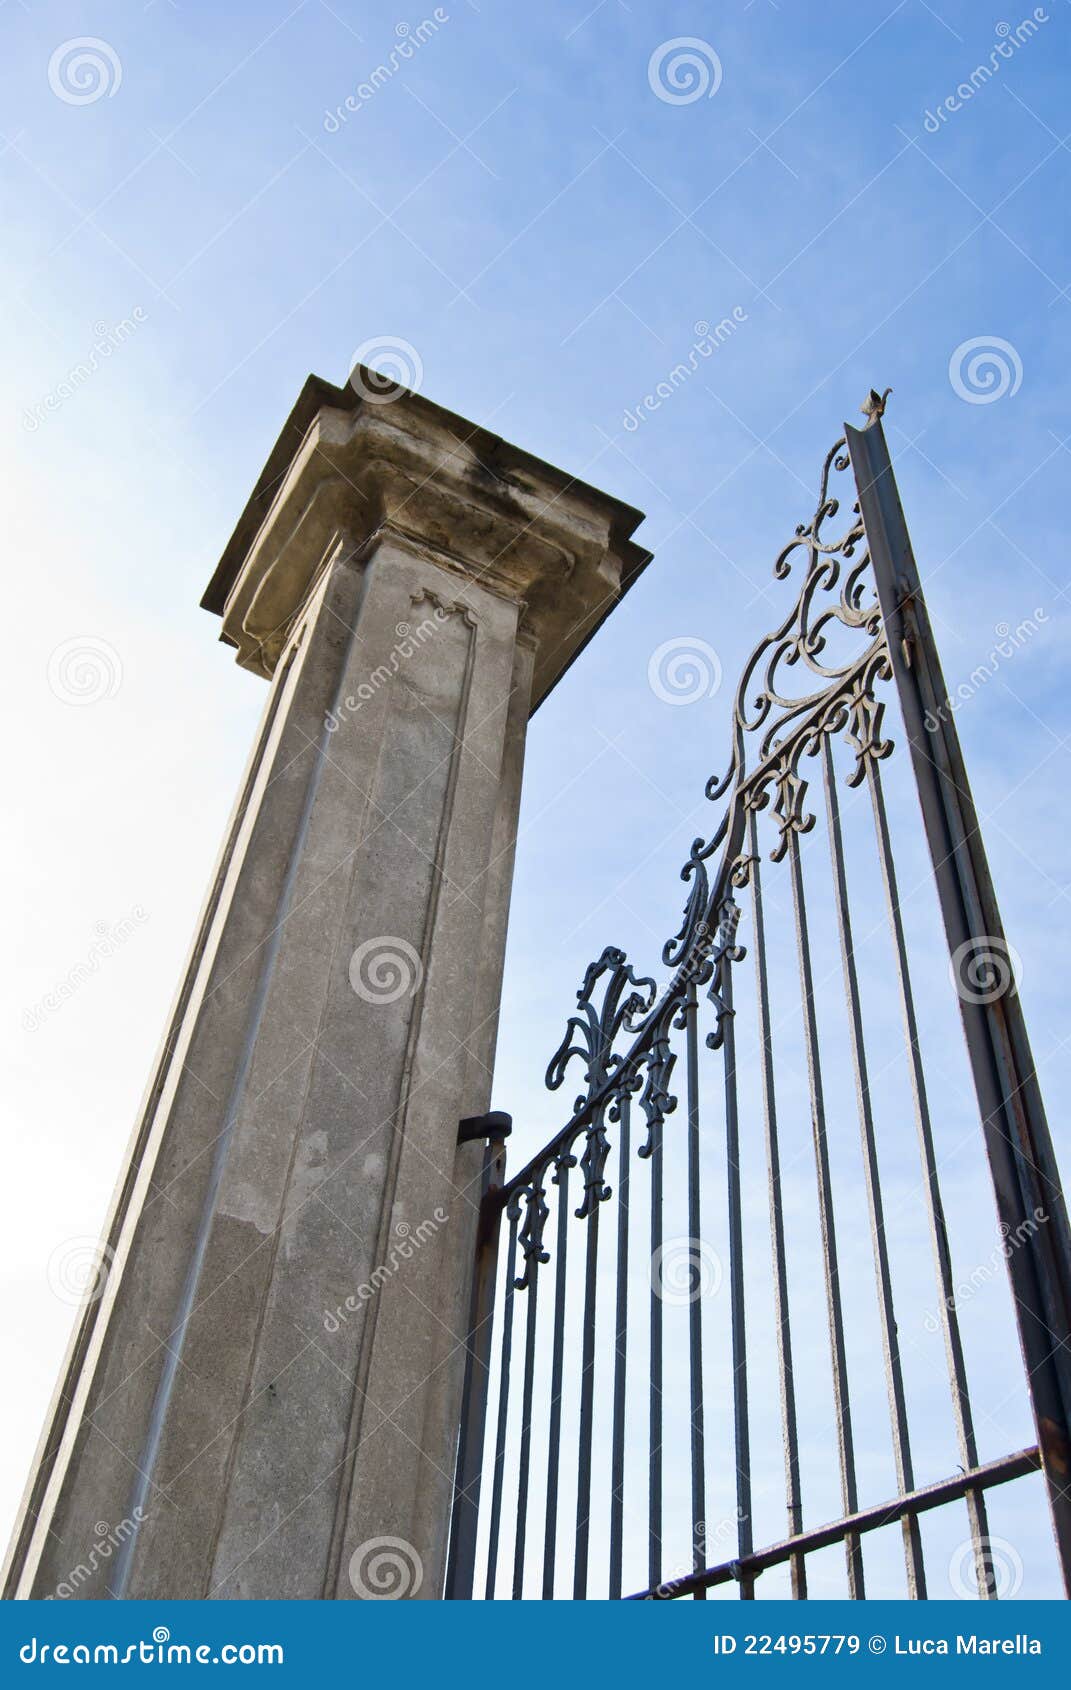 imposing old gate column